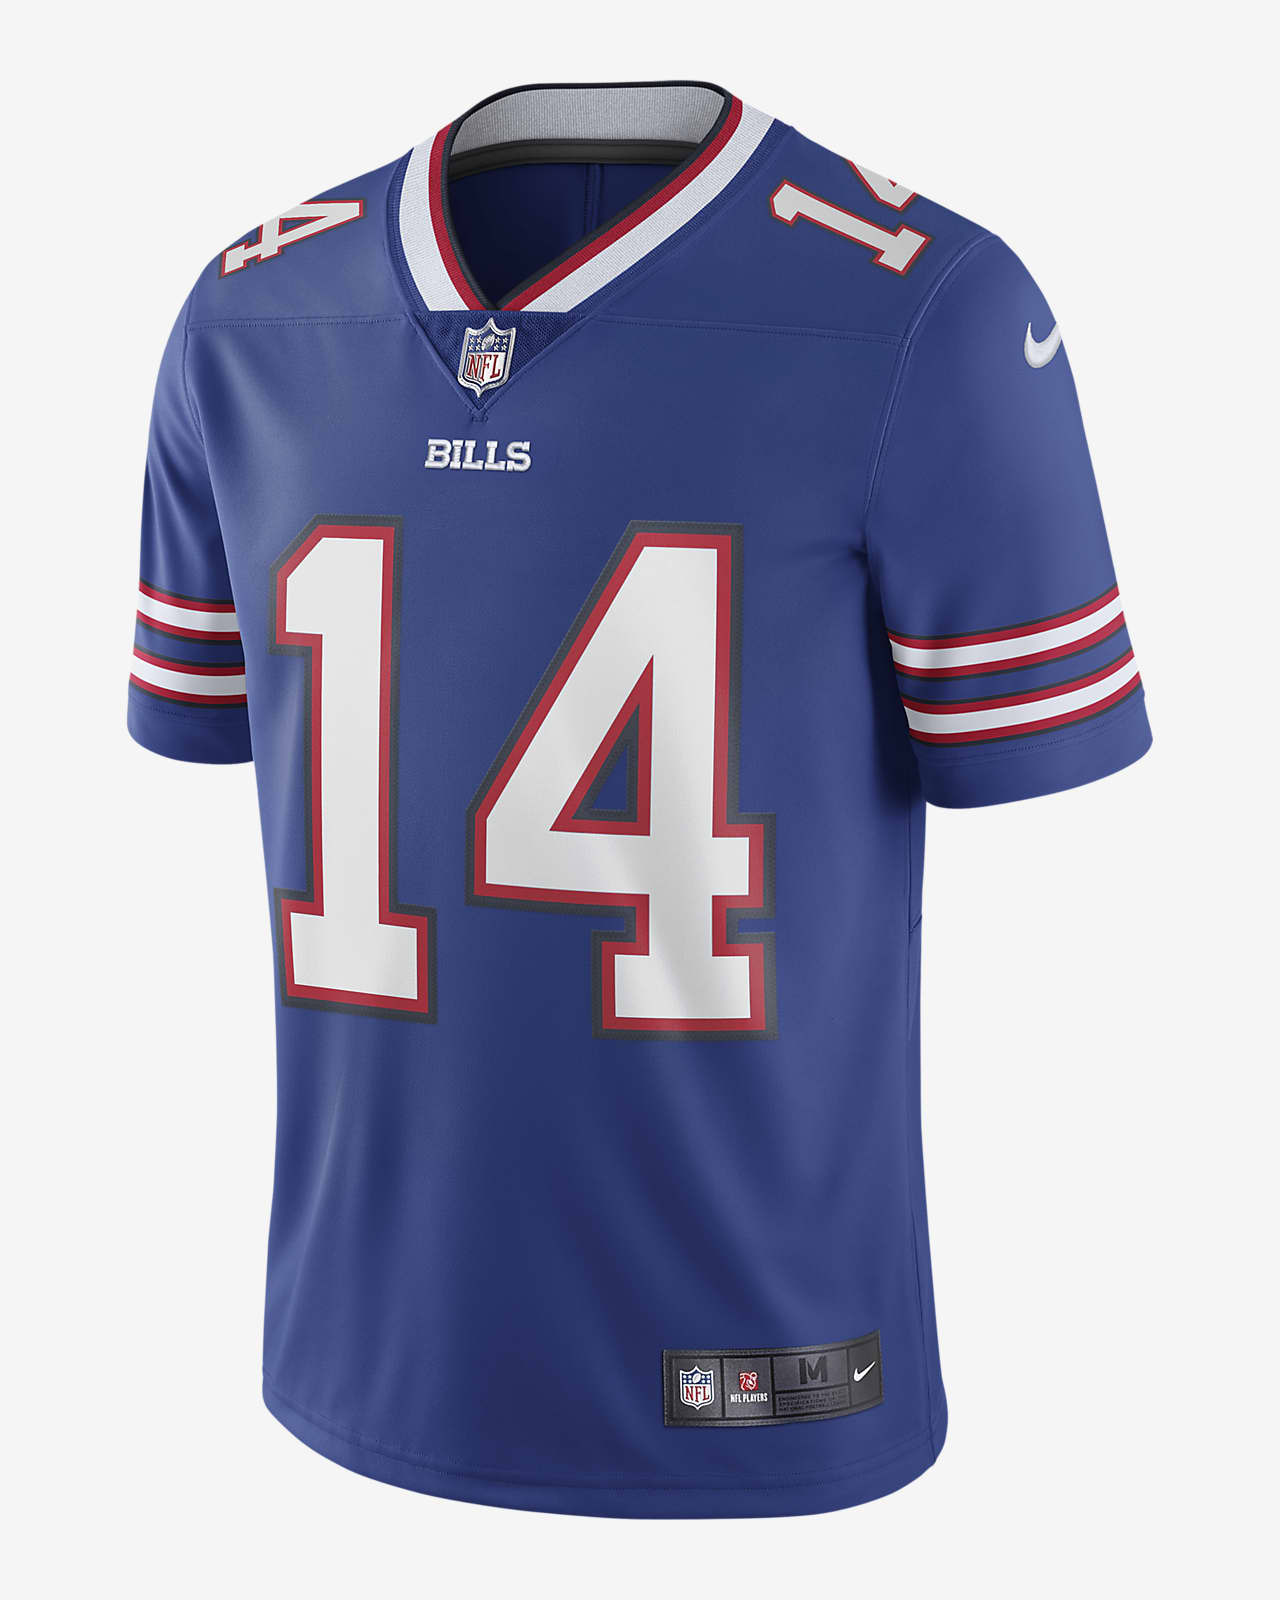 Jersey de fútbol americano edición limitada para hombre NFL Buffalo Bills Nike Vapor (Stefon